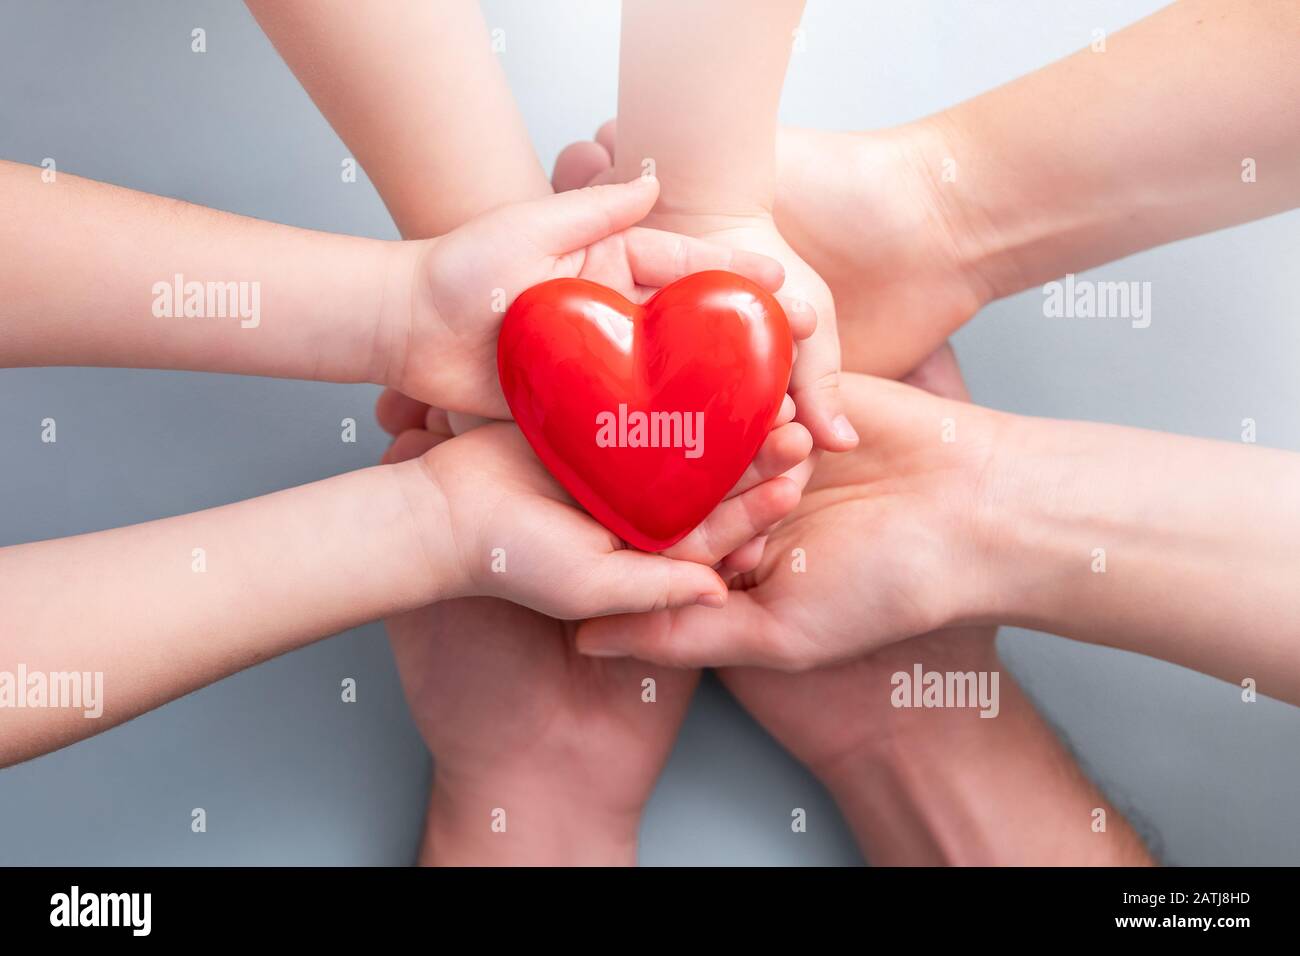 Ein Erwachsener, Mutter, Vater und Kind haben ein rotes Herz in den Händen. Konzept für Wohltätigkeitsorganisation, Krankenversicherung, Liebe, internationaler Kardiologietag. Stockfoto